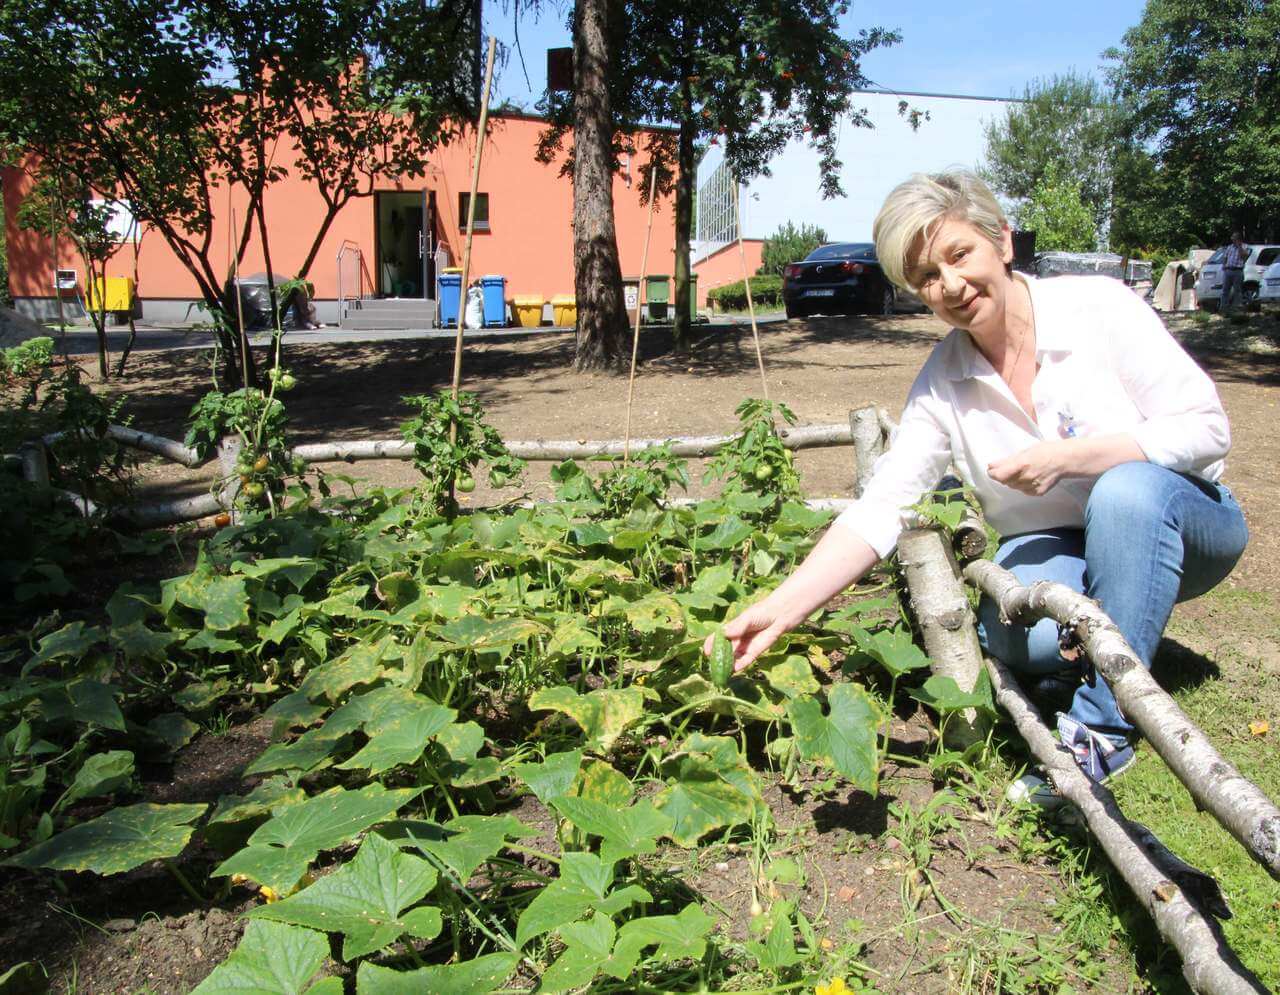 Szkolnych ogrodników cieszą też pierwsze plony. - Zebraliśmy sporo ogórków - mówi dyrektorka. Zdj. Sabina Horzela-Piskula